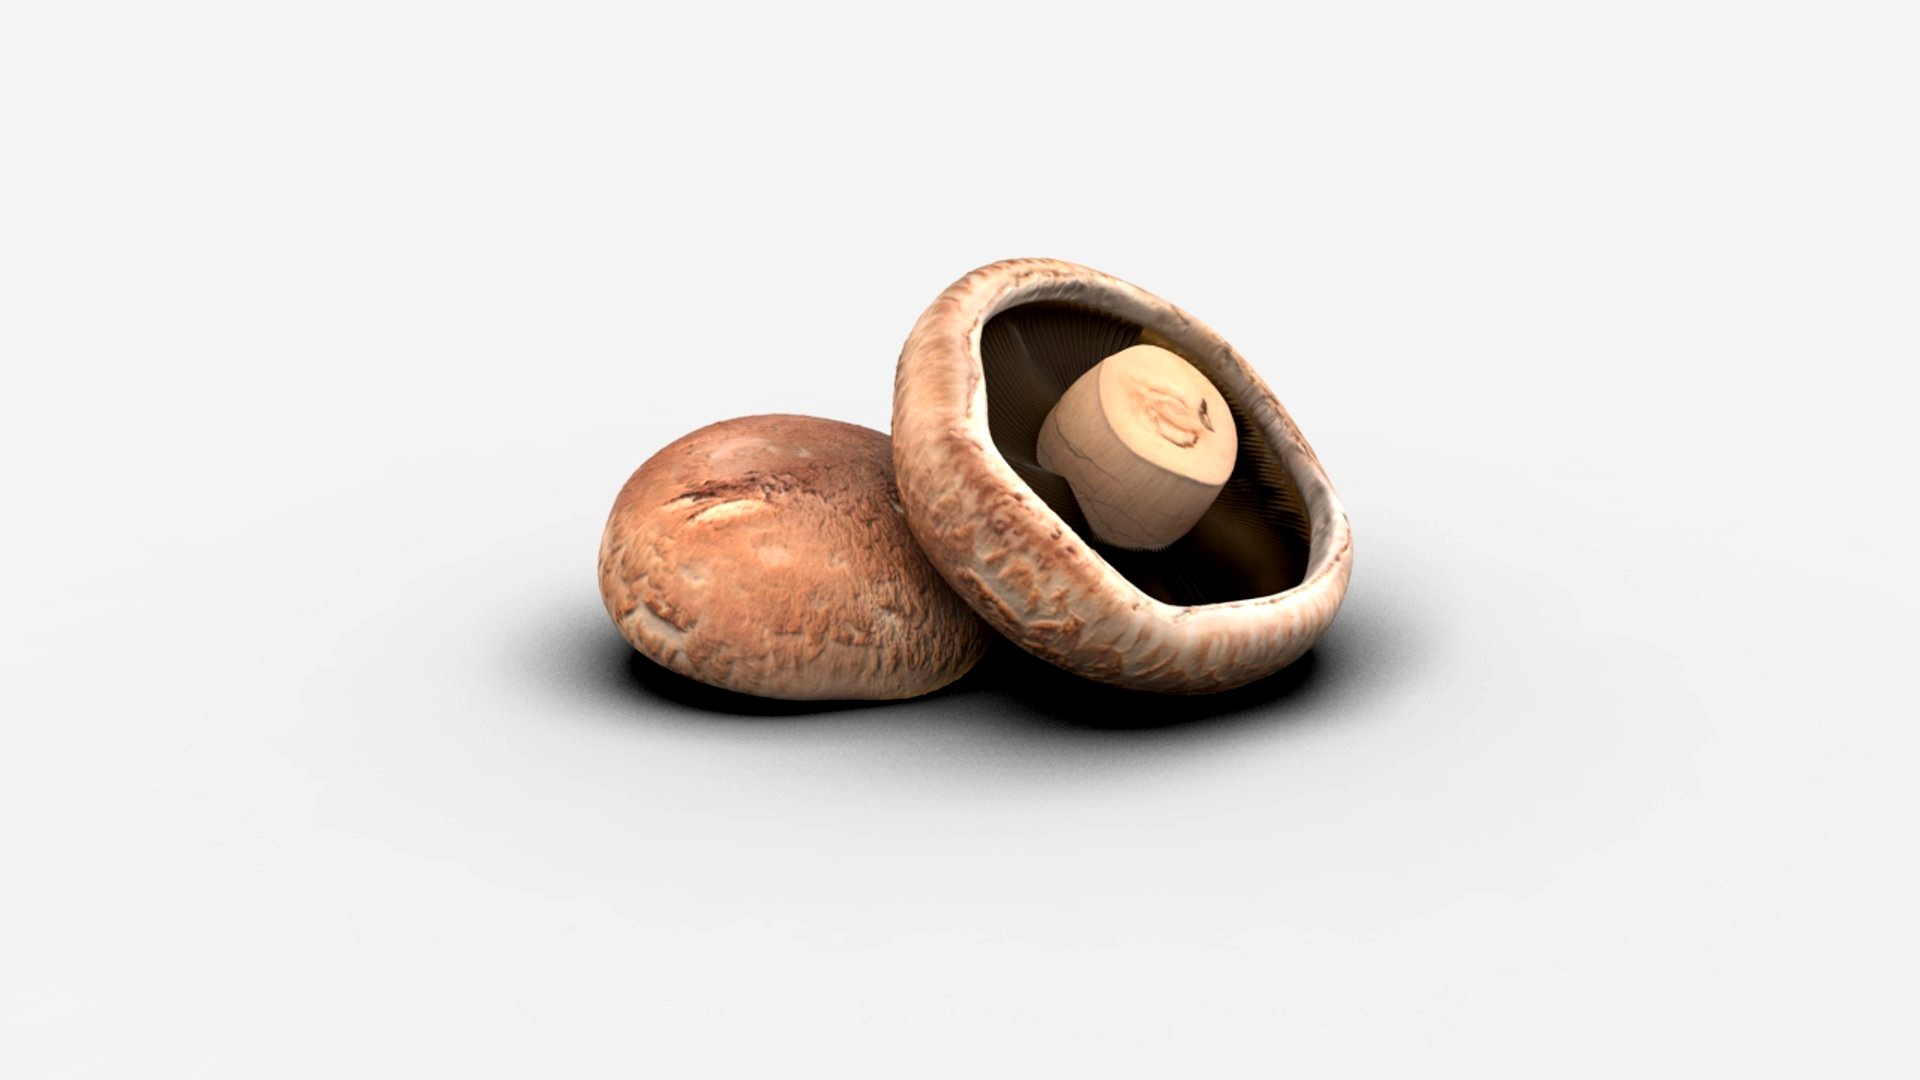 Realistic Mushroom